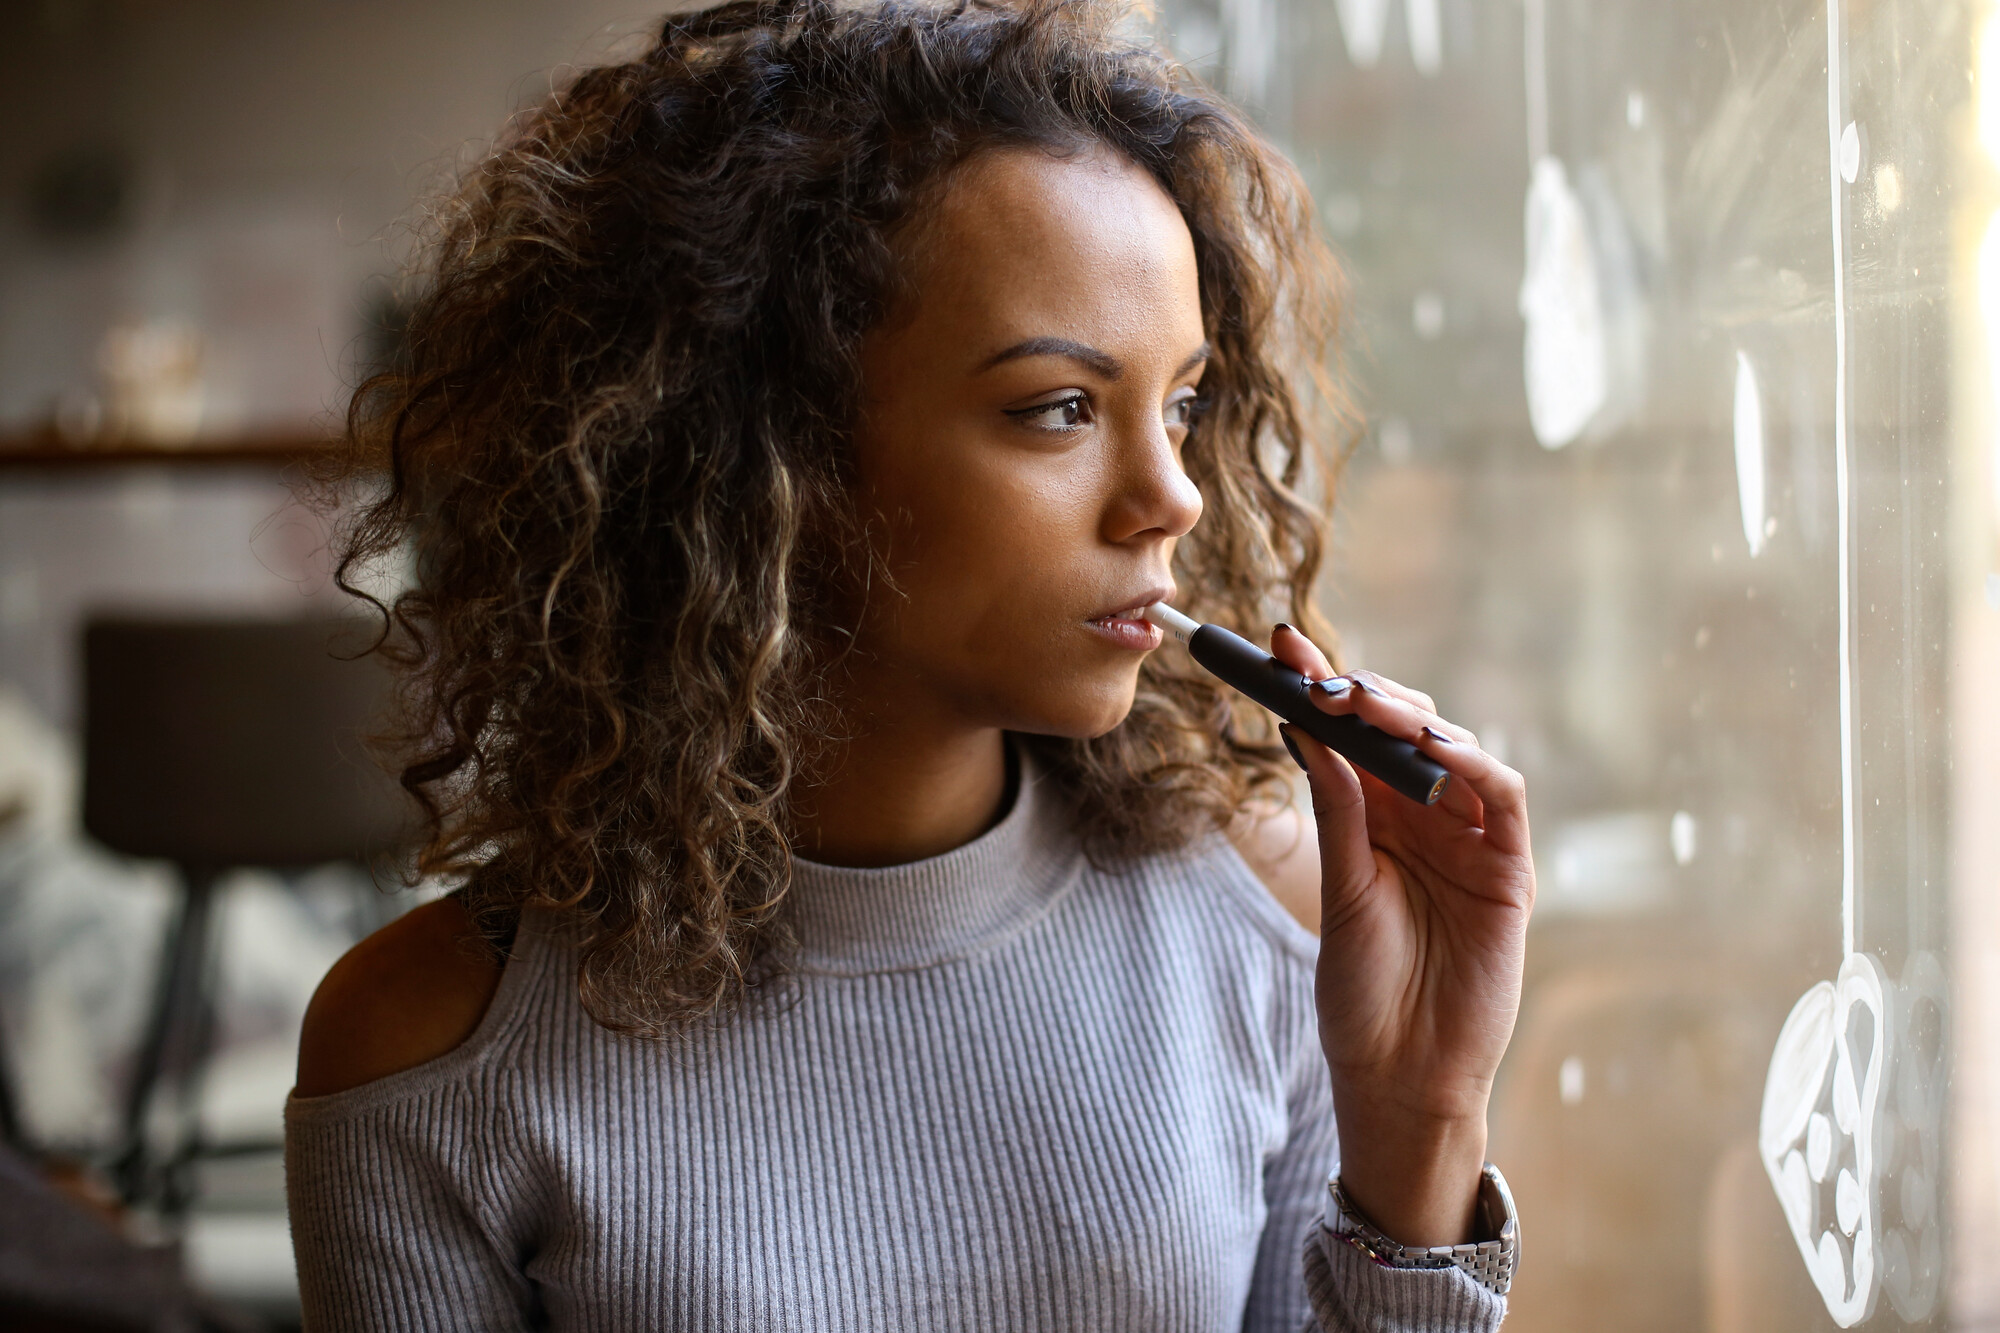 Neben dem "Dauerbrenner" Zigaretten liegen bei Jüngeren vor allem E-Zigaretten im Trend. Deren Gefahrenpotenzial ist jedoch noch nicht vollständig geklärt. Für den täglichen Umgang mit Rauchern gibt die aktualisierte S3-Leitlinie zur Rauchentwöhnung praxisrelevante Empfehlungen.